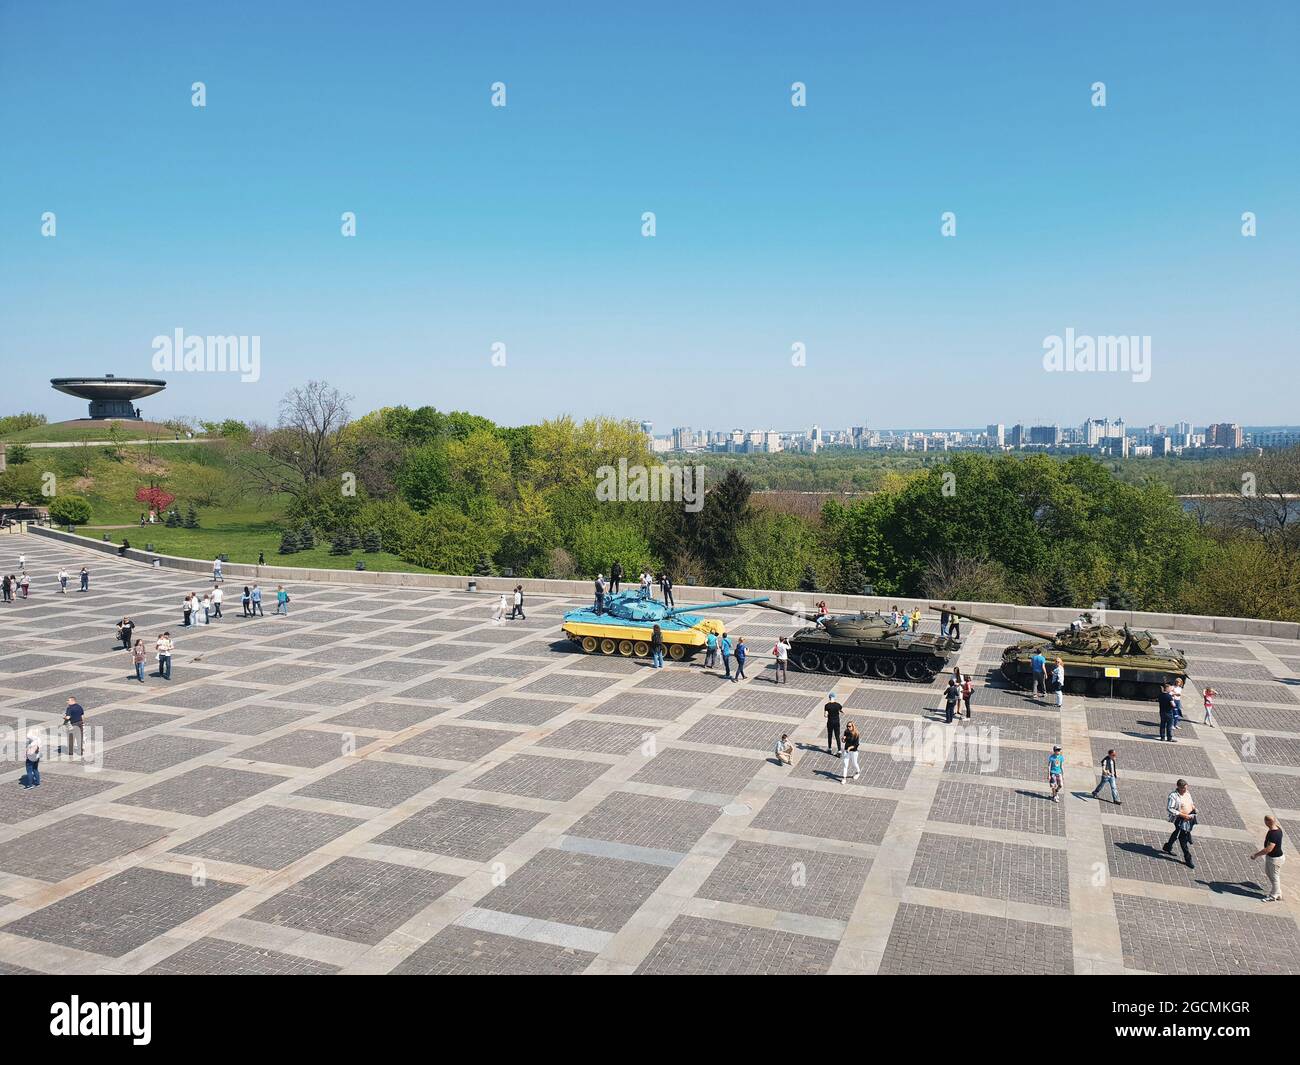 Kiew, Ukraine-29. April 2018: Menschen, die Fotos machen, und Kinder, die auf den bunten Panzern in der Nähe des Mutterland-Denkmals in Kiew spielen: Touristen und Stockfoto